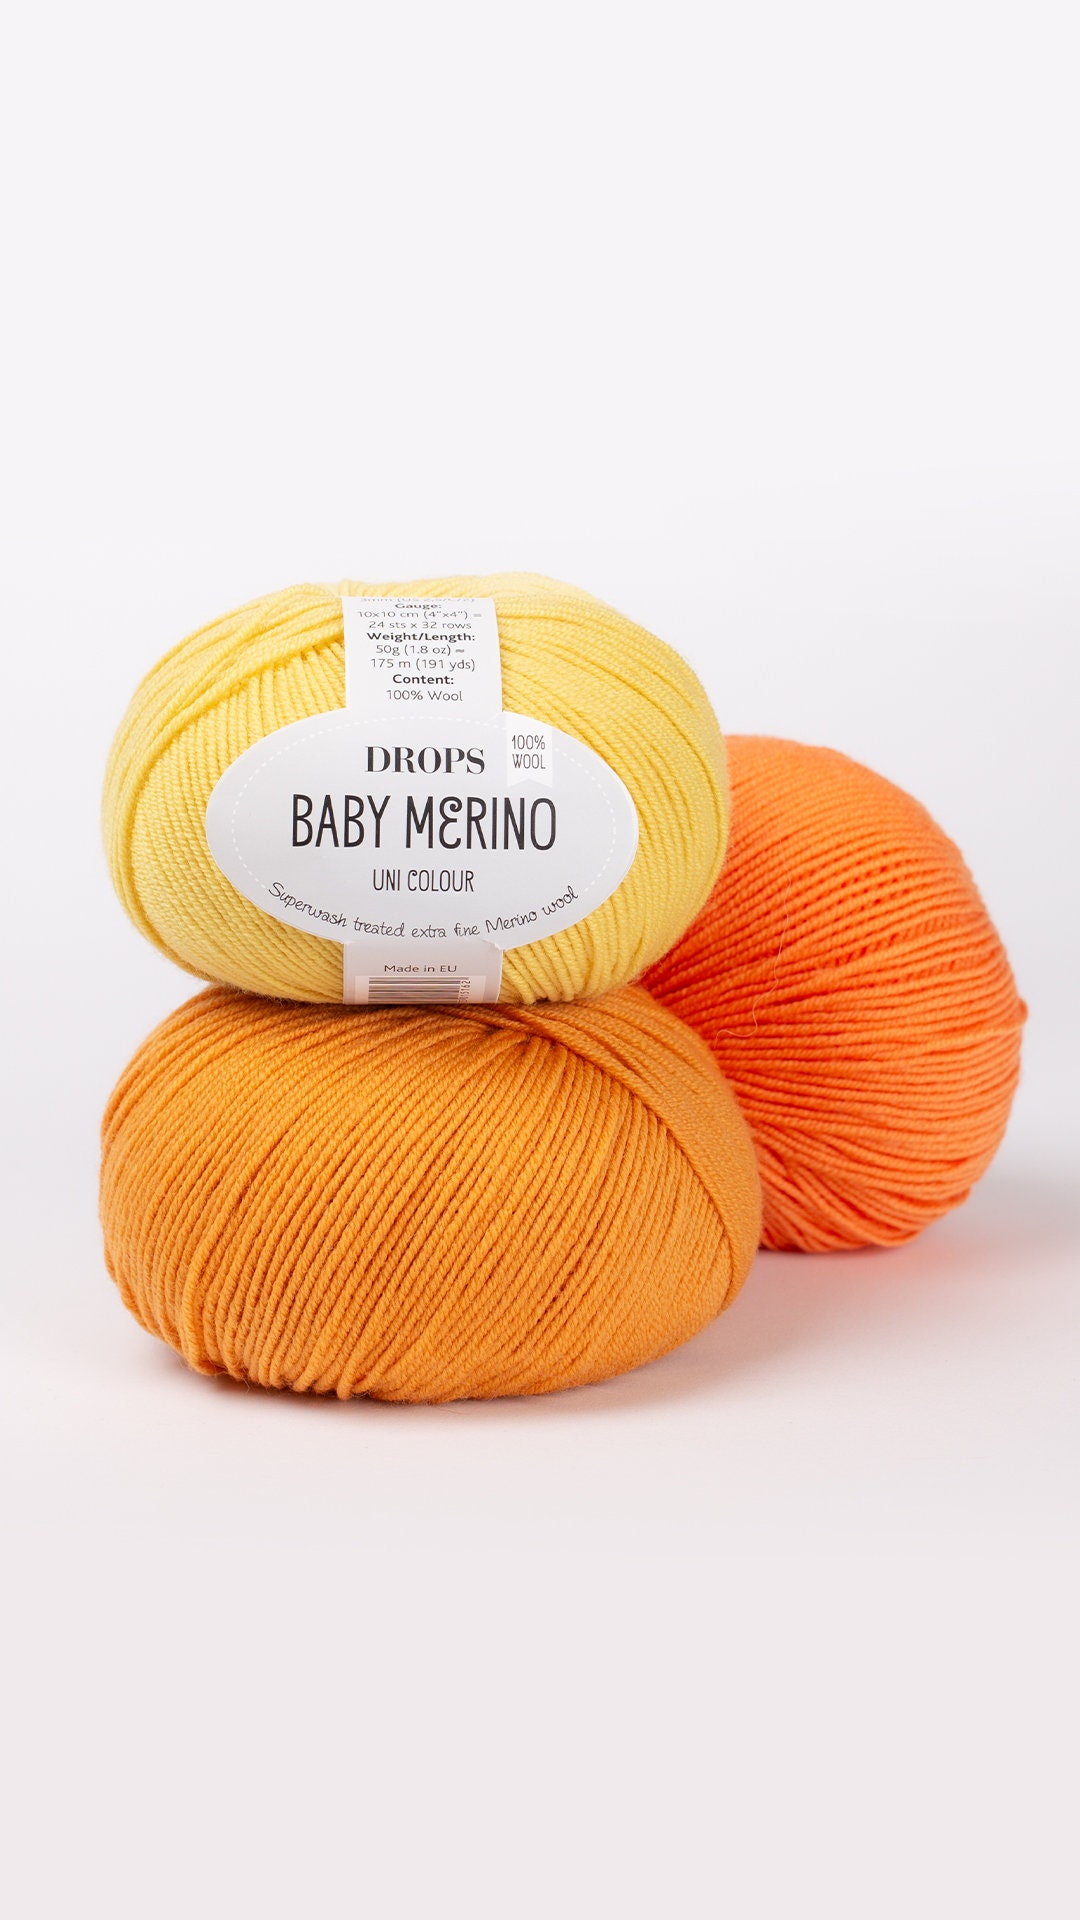 50g/ball High Quality Warm DIY Milk Cotton Yarn Baby Wool Yarn for Knitting  Children Hand Knitted Yarn Knit Blanket Crochet Yarn